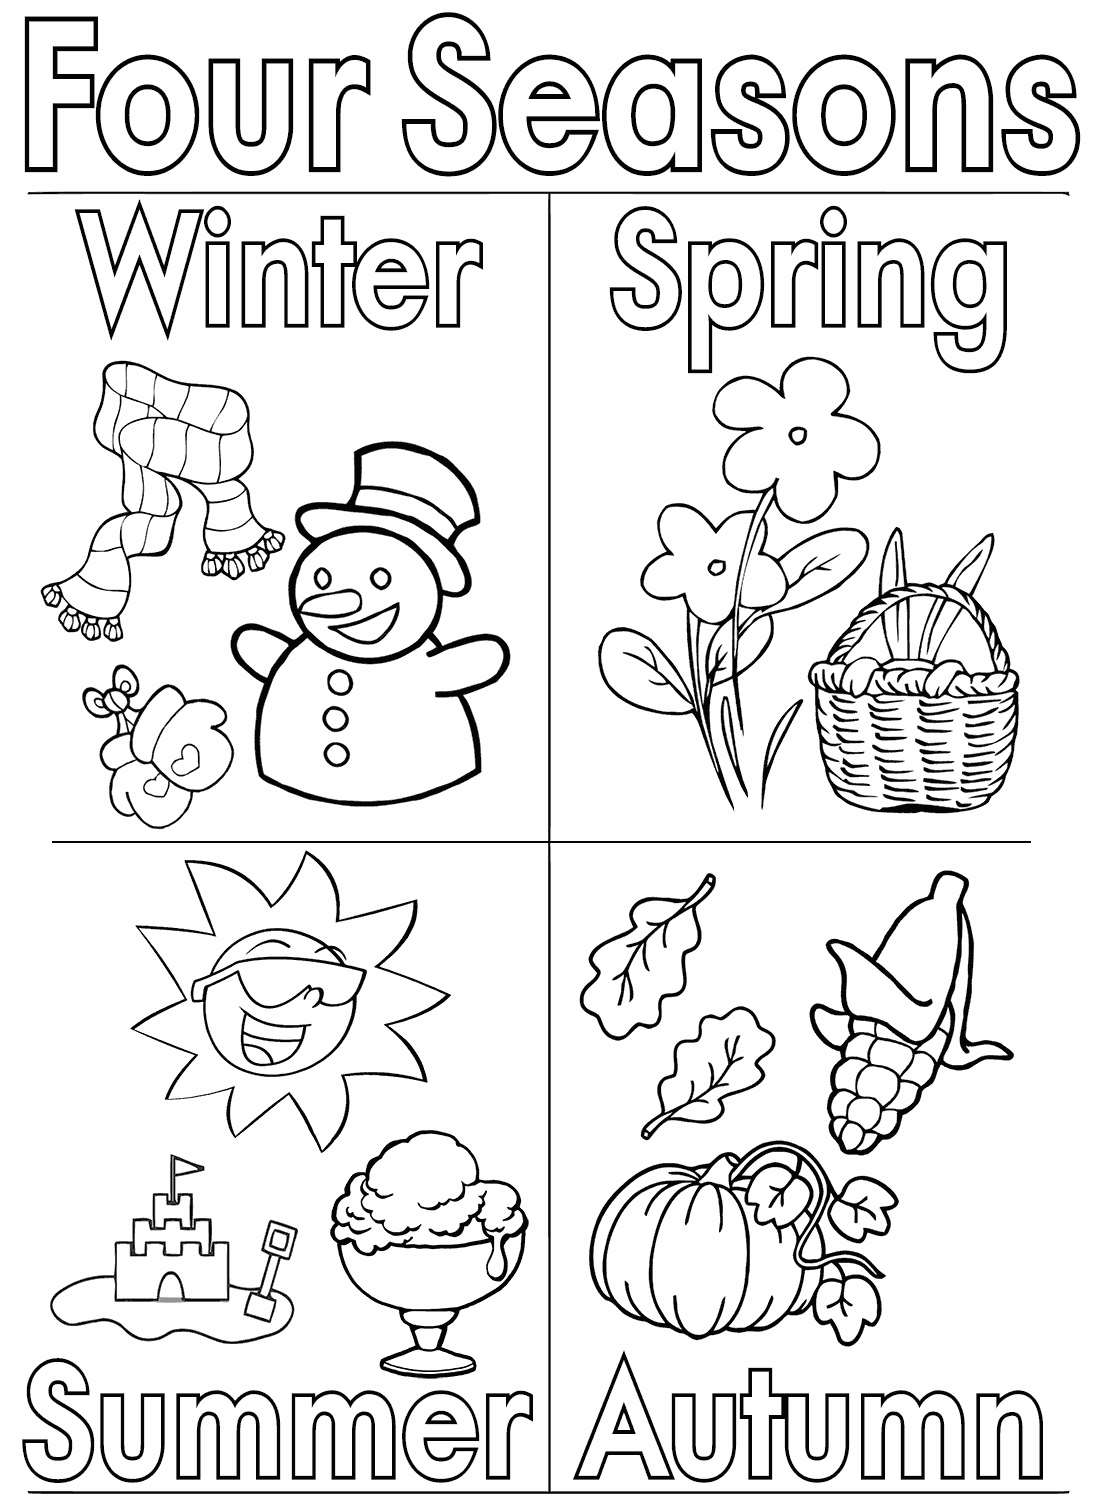 seasons coloring pages 4 seasons coloring pages to print coloring for kids 2019 pages seasons coloring 